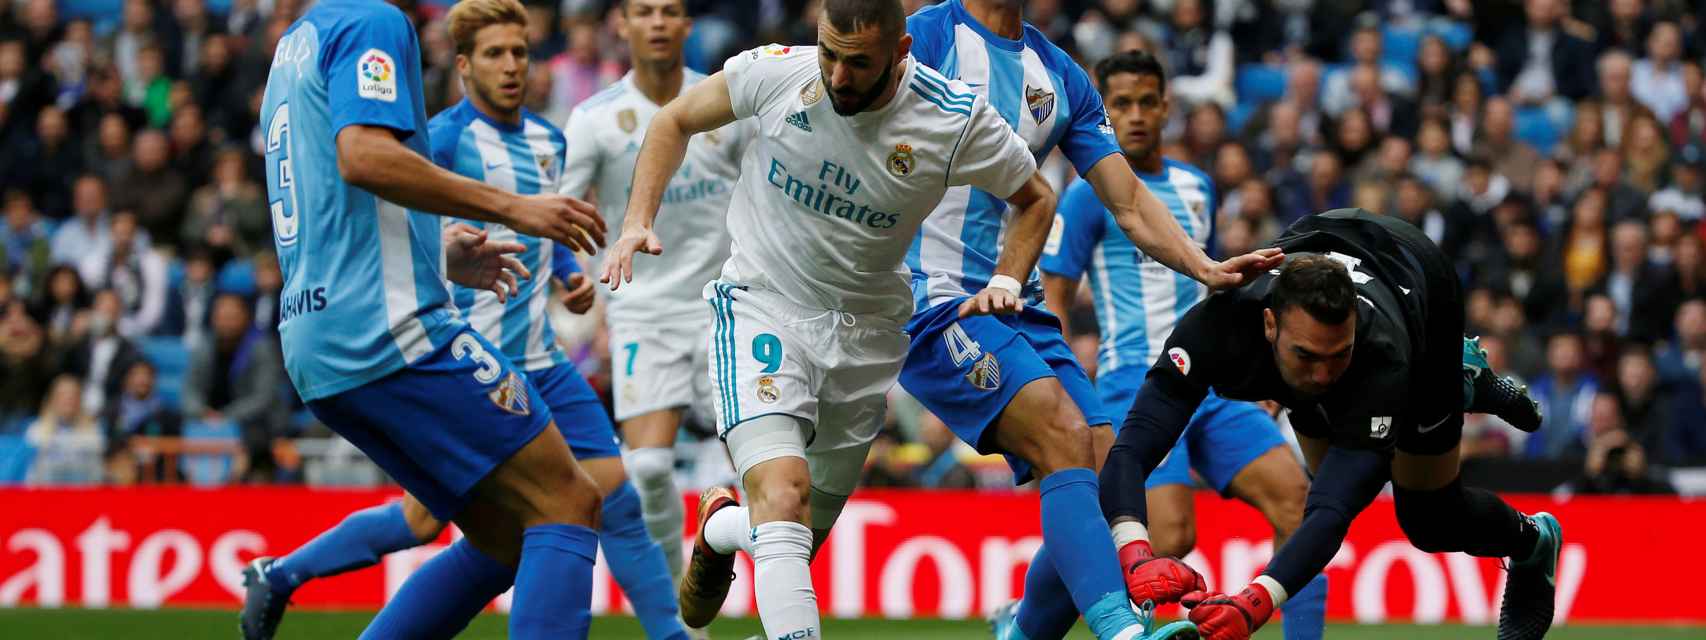 Un lance del partido entre Real Madrid y Málaga.